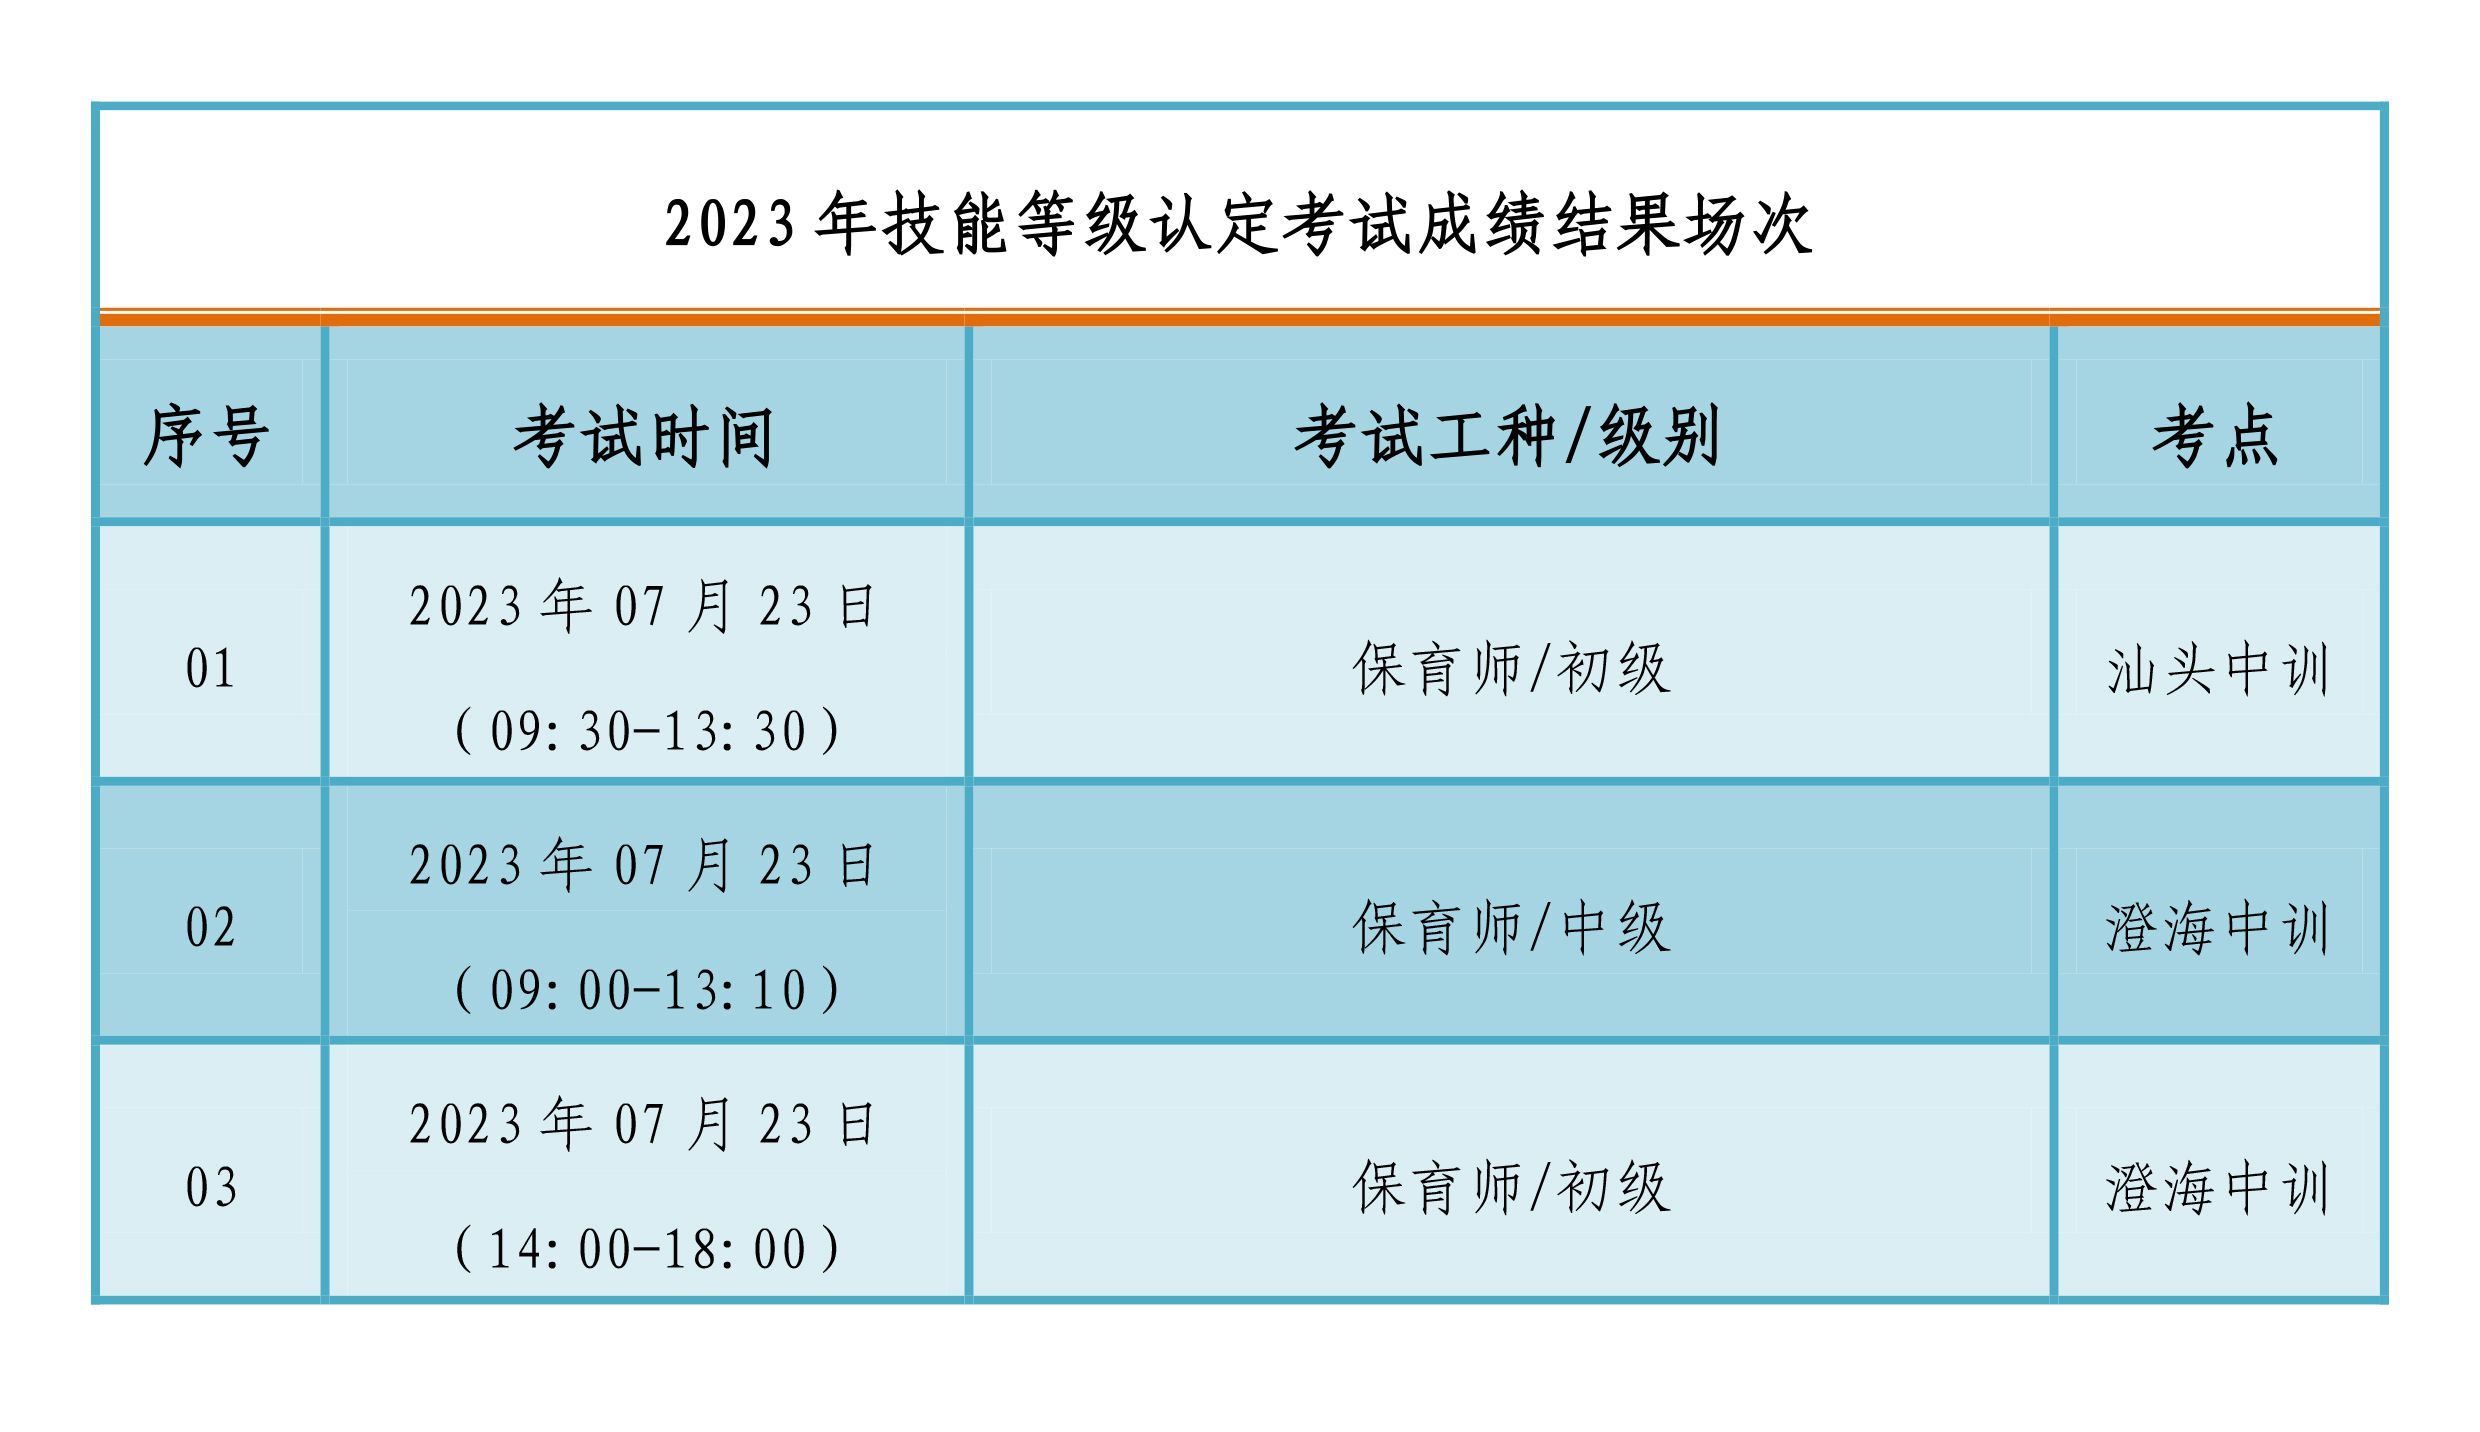 07月23日职业技能等级认定成绩公布通知-4.jpg